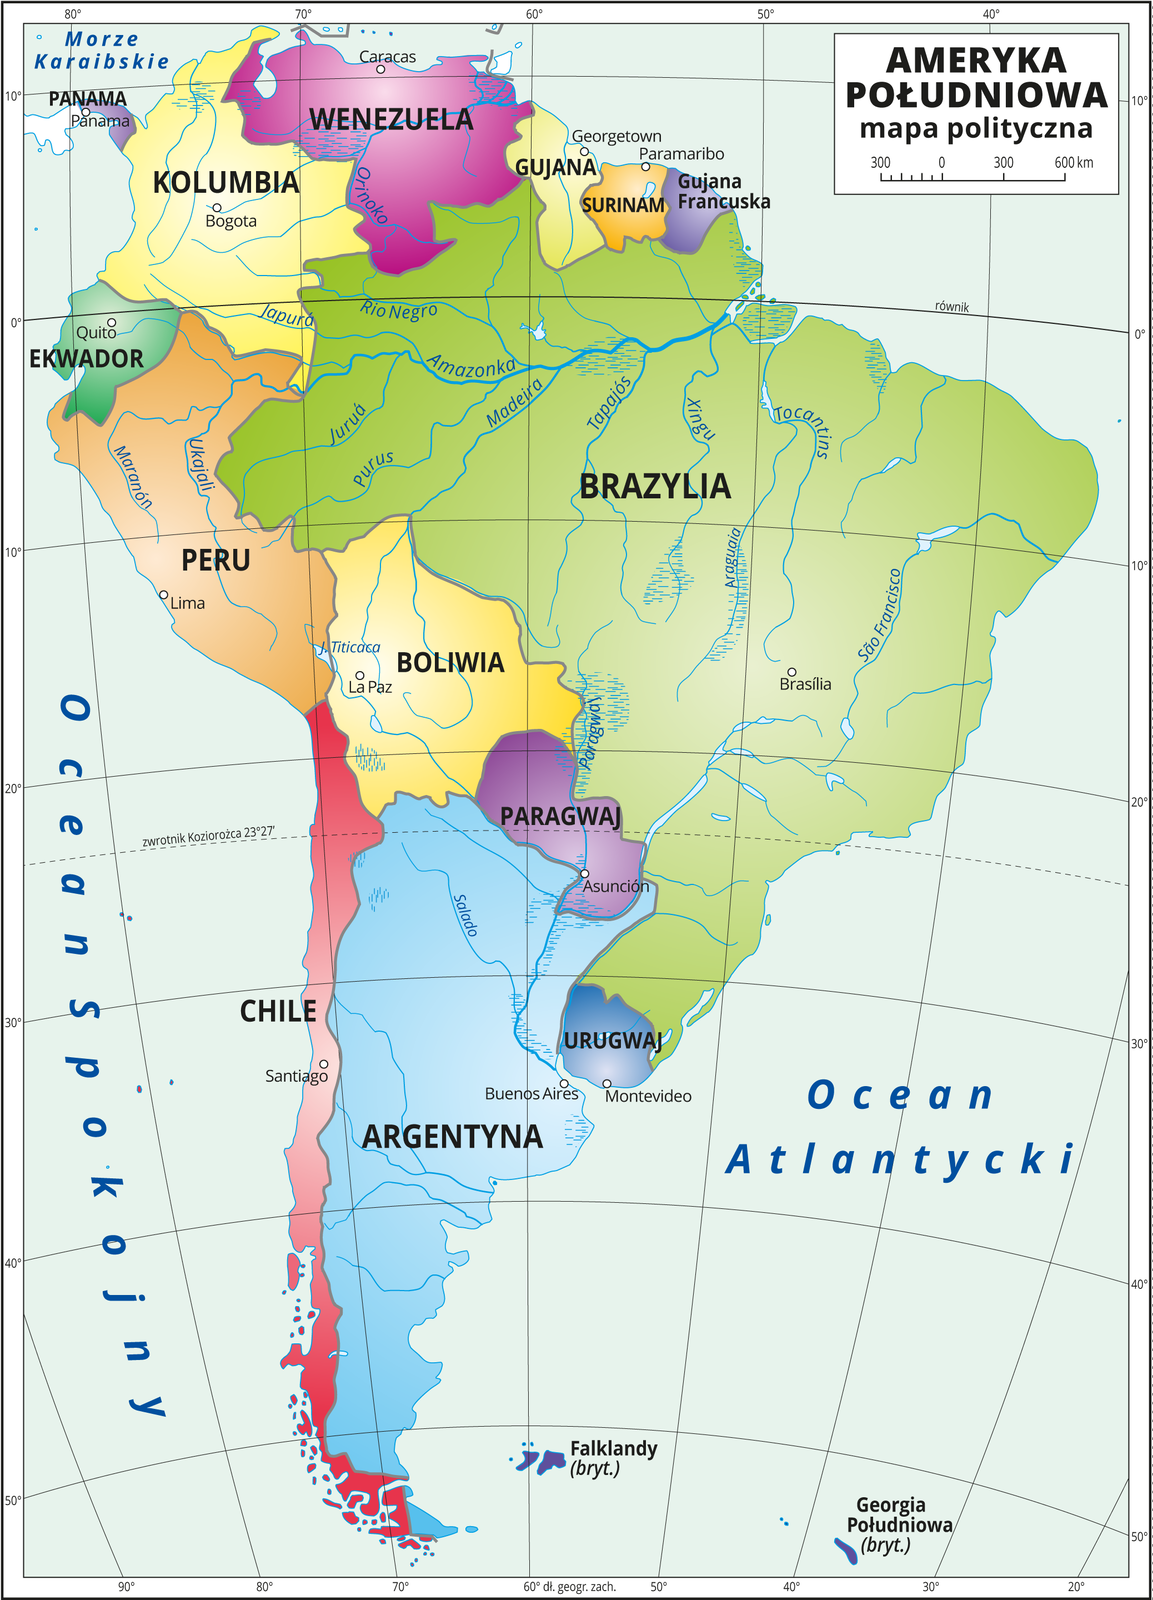 Ilustracja przedstawia mapę polityczną Ameryki Południowej. Państwa wyróżnione kolorami i opisane. Oznaczono i opisano stolice. Morza zaznaczono kolorem niebieskim i opisano. Mapa pokryta jest równoleżnikami i południkami. Dookoła mapy w białej ramce opisano współrzędne geograficzne co dziesięć stopni.